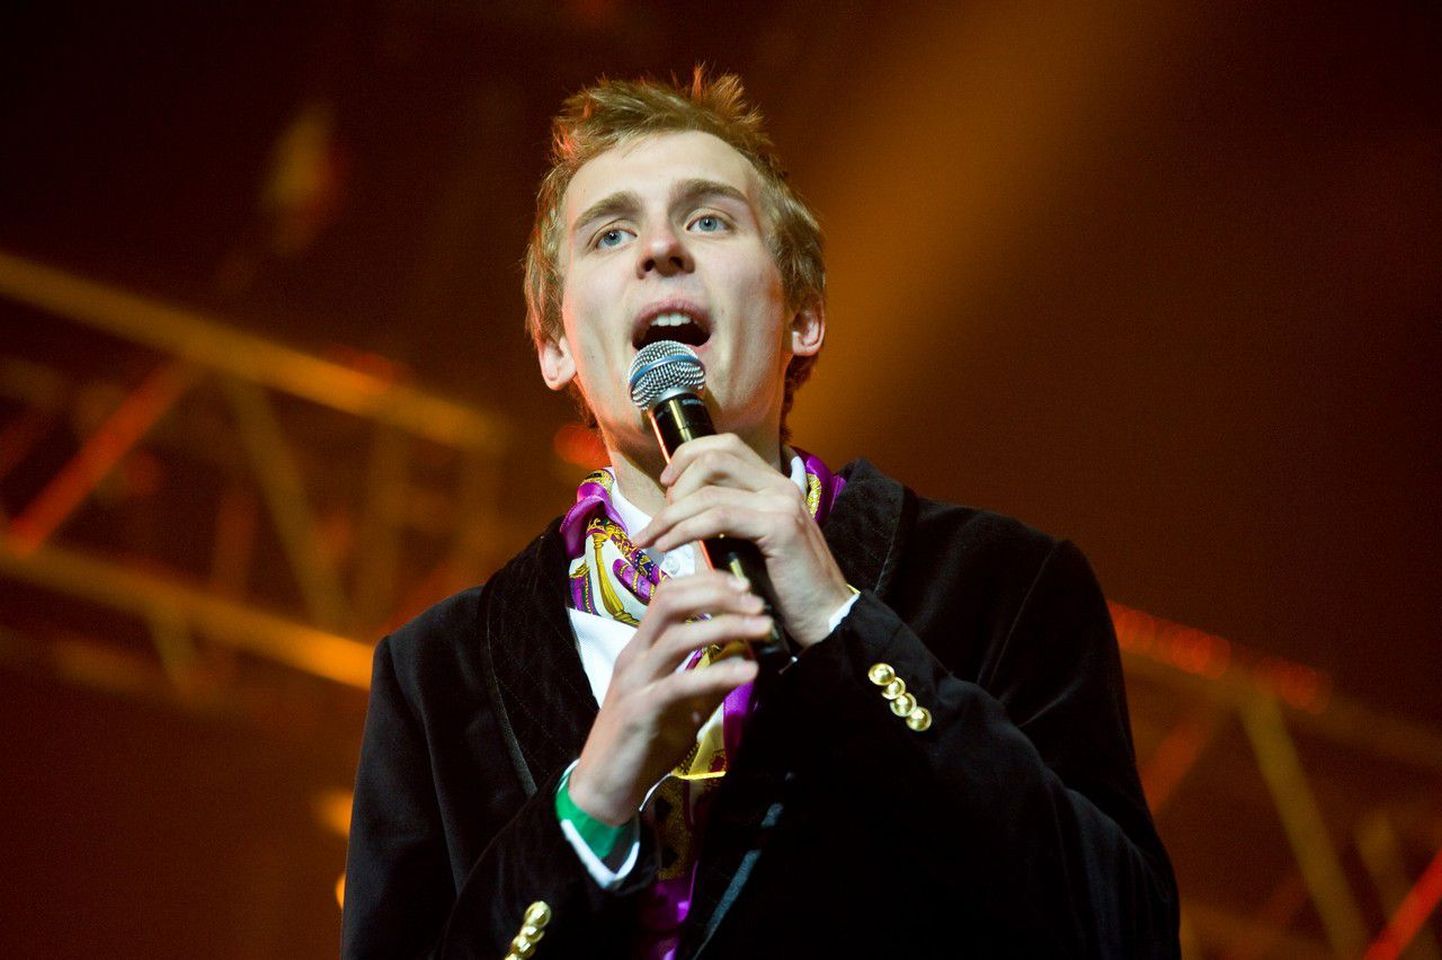 Eesti Laul 2010 võitjad - Malcolm Lincolm